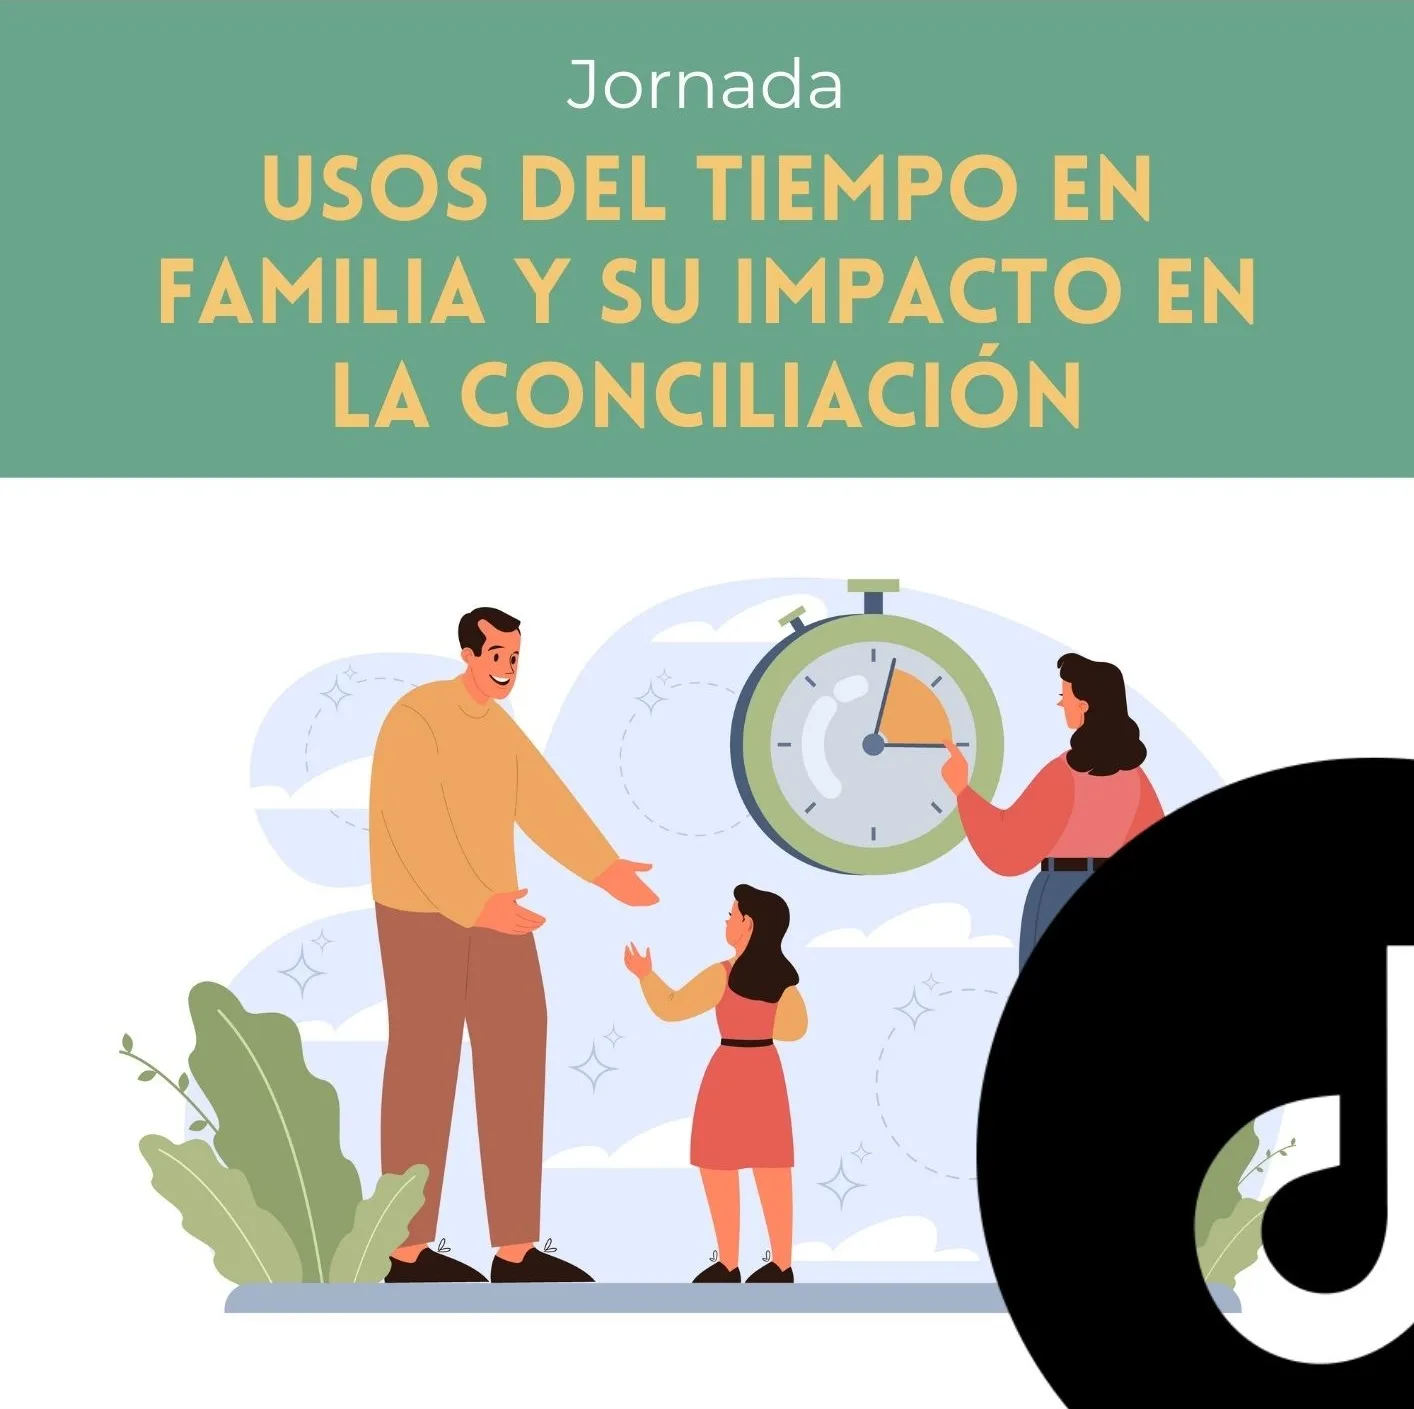 Jornada Usos del tiempo en familia y su impacto en la conciliación